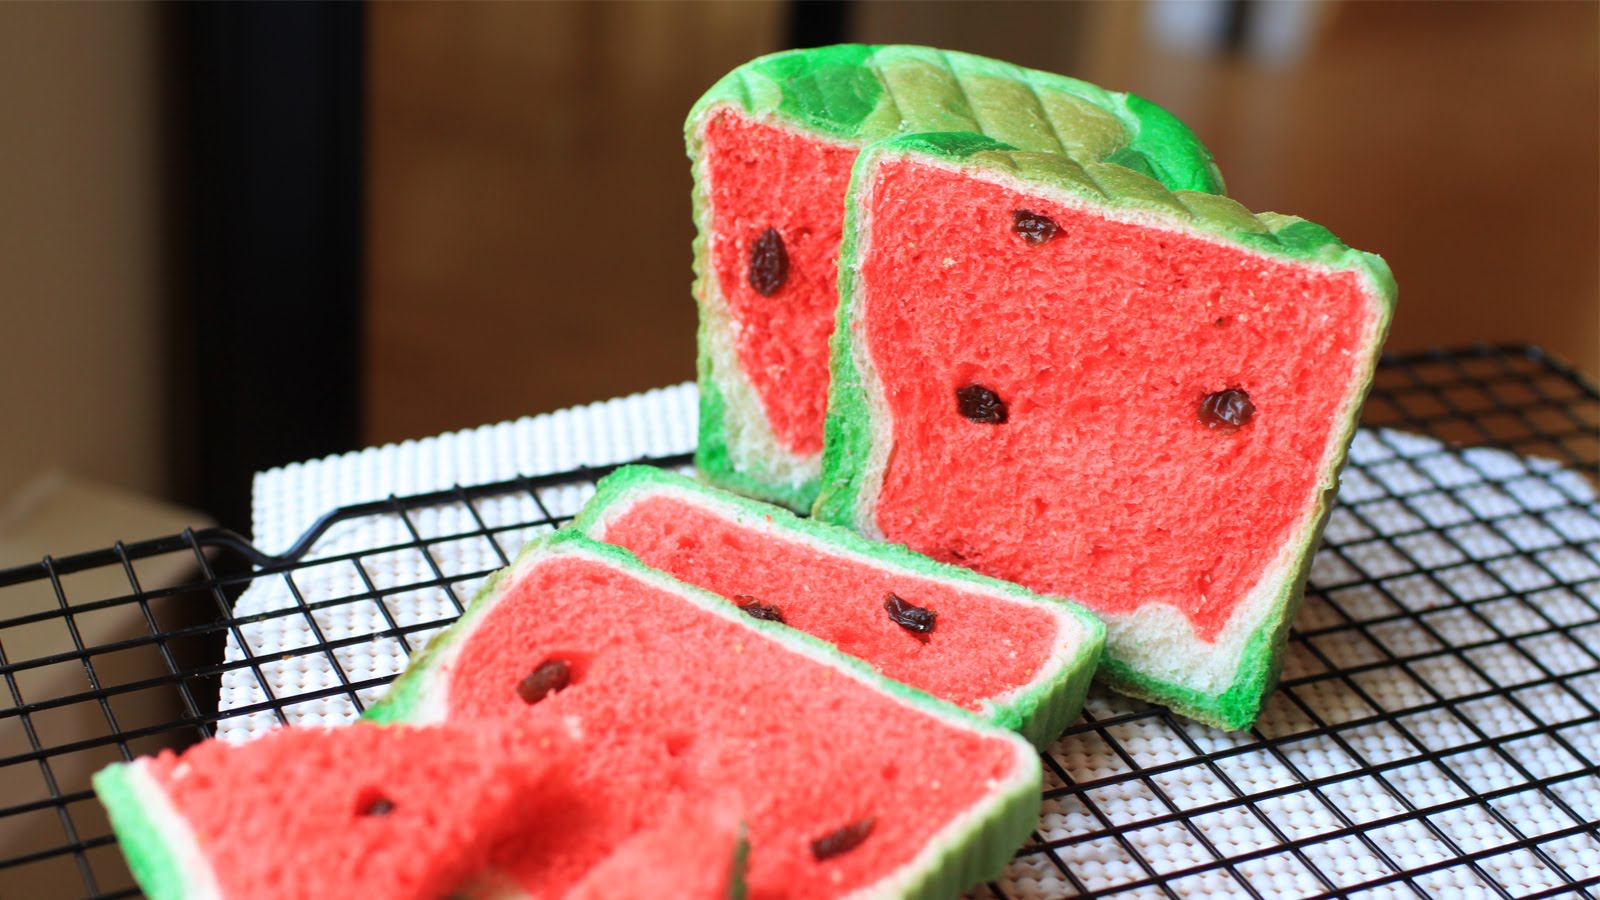 Watermelon Bread Looks Like Watermelon In Loaf Form